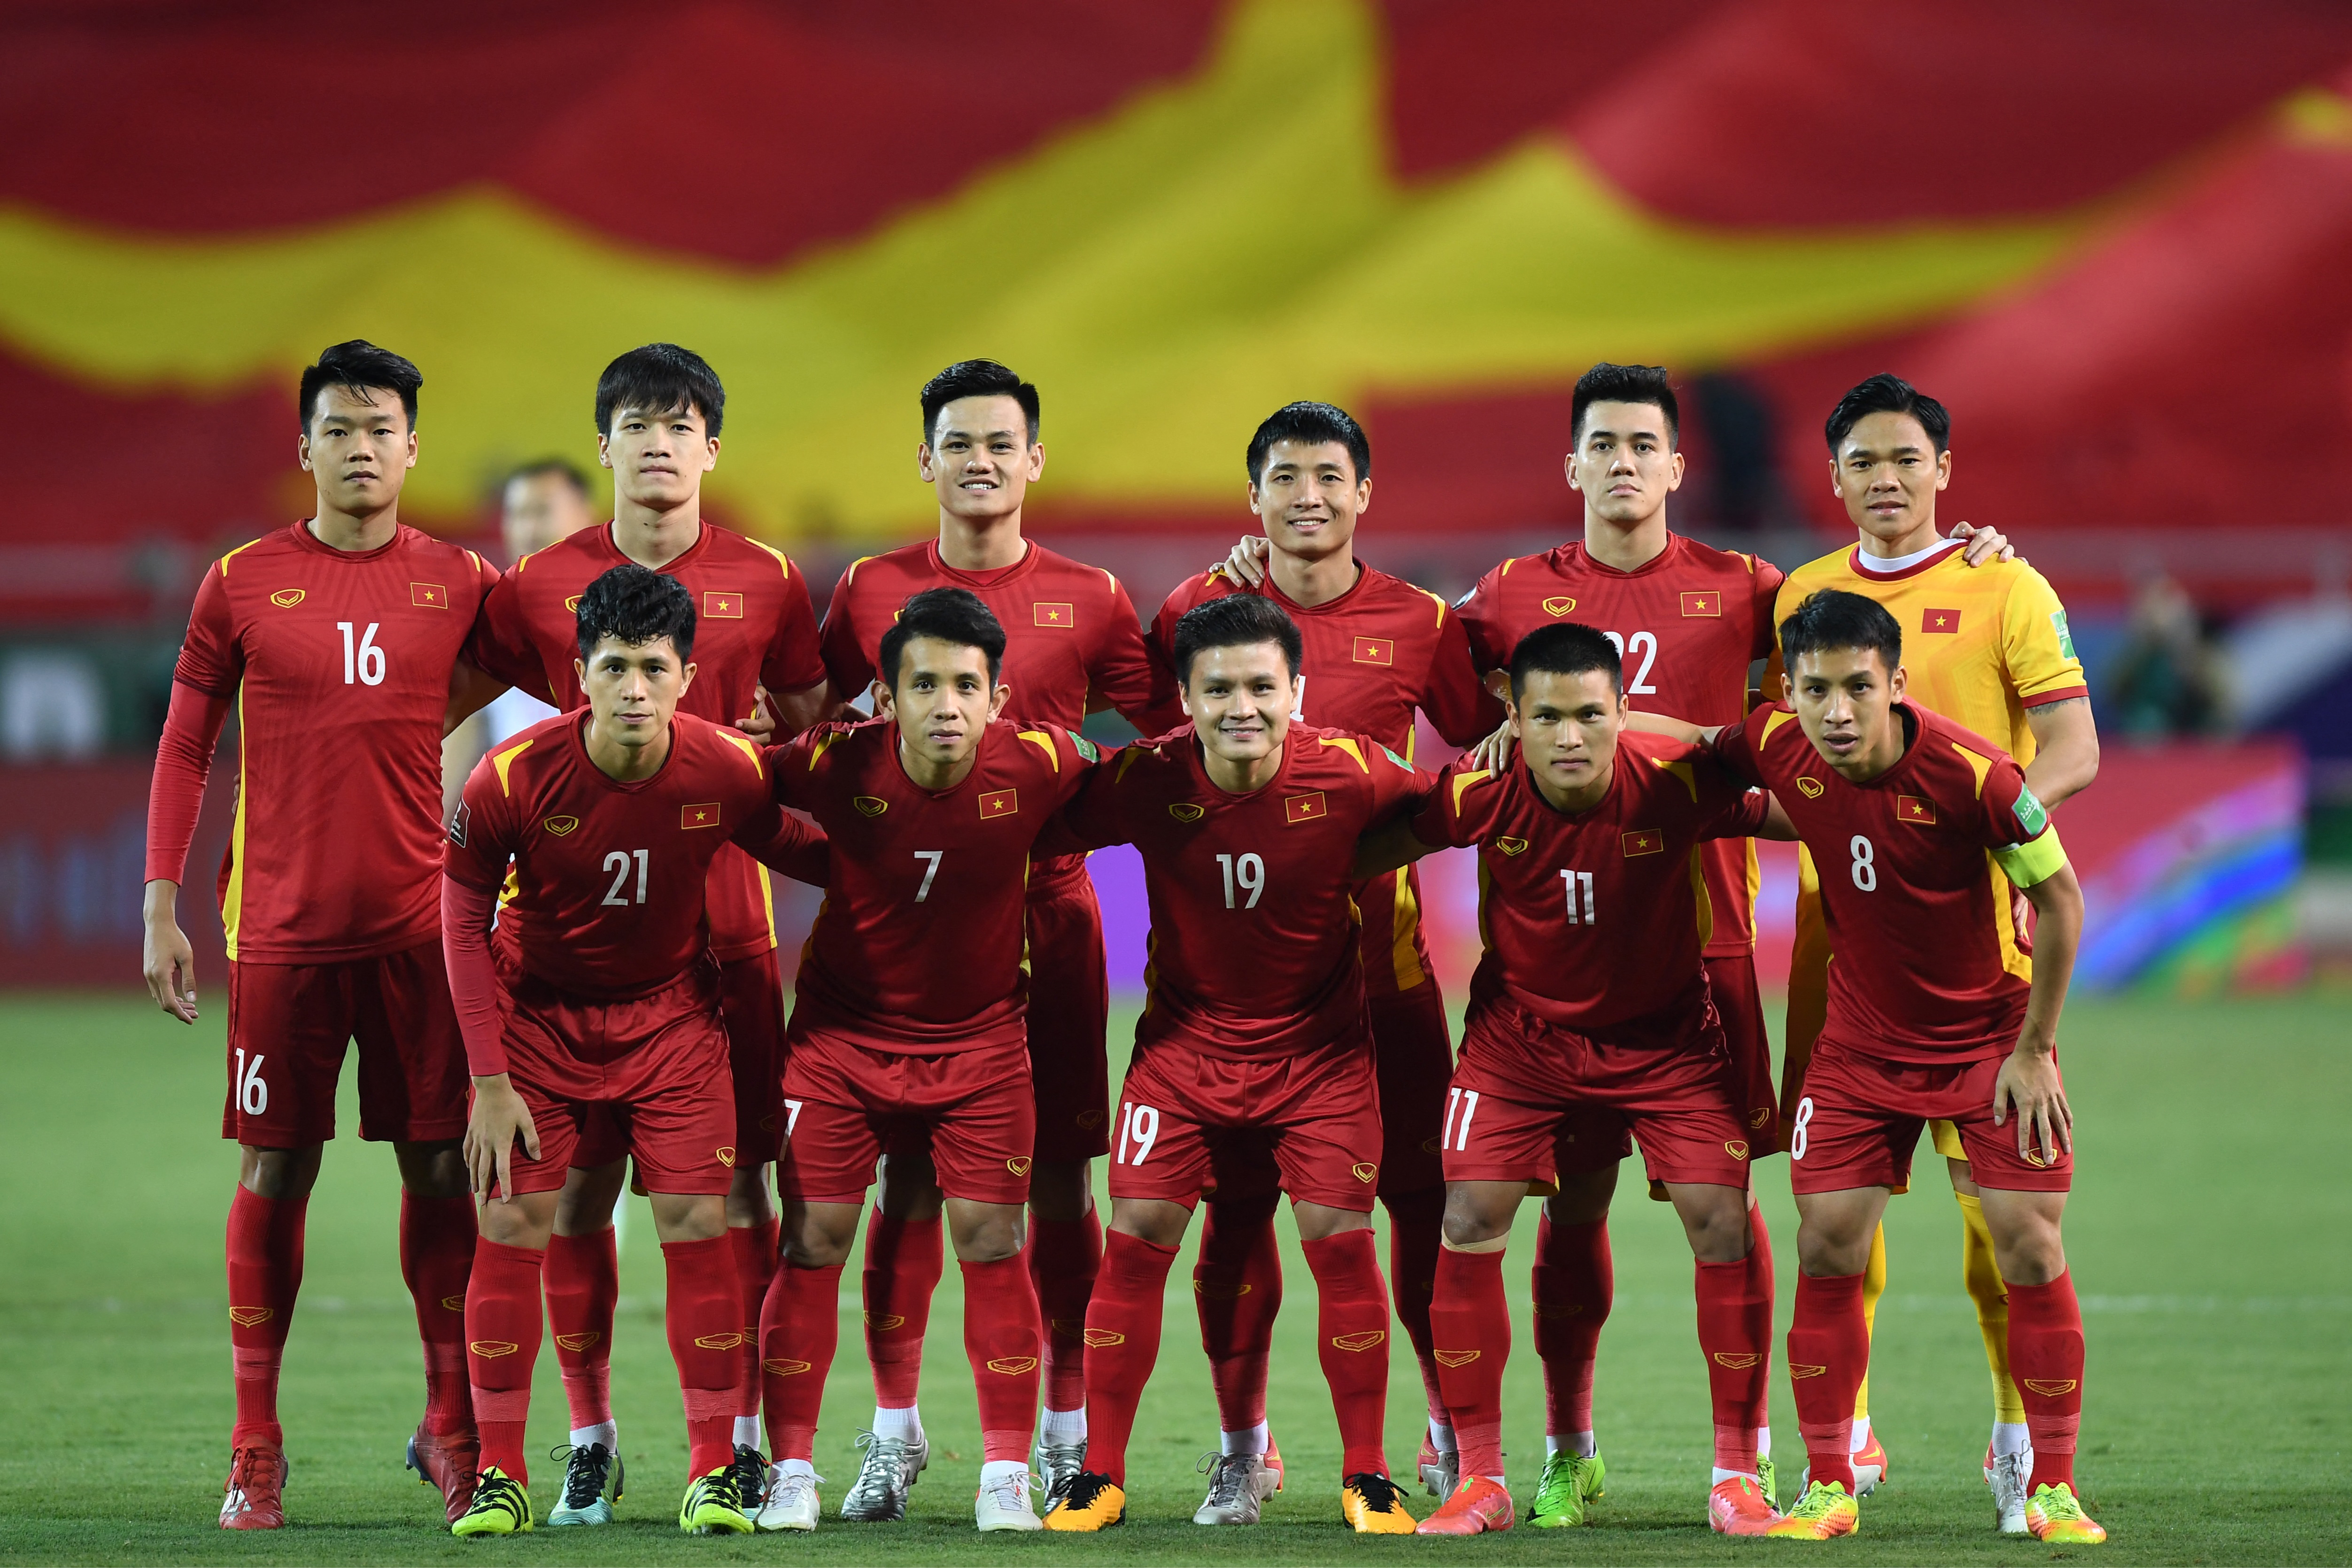 Bóng đá Việt Nam Cầu thủ gốc Việt nguồn nhân lực mới nhiều tiềm năng   Tạp chí thể thao